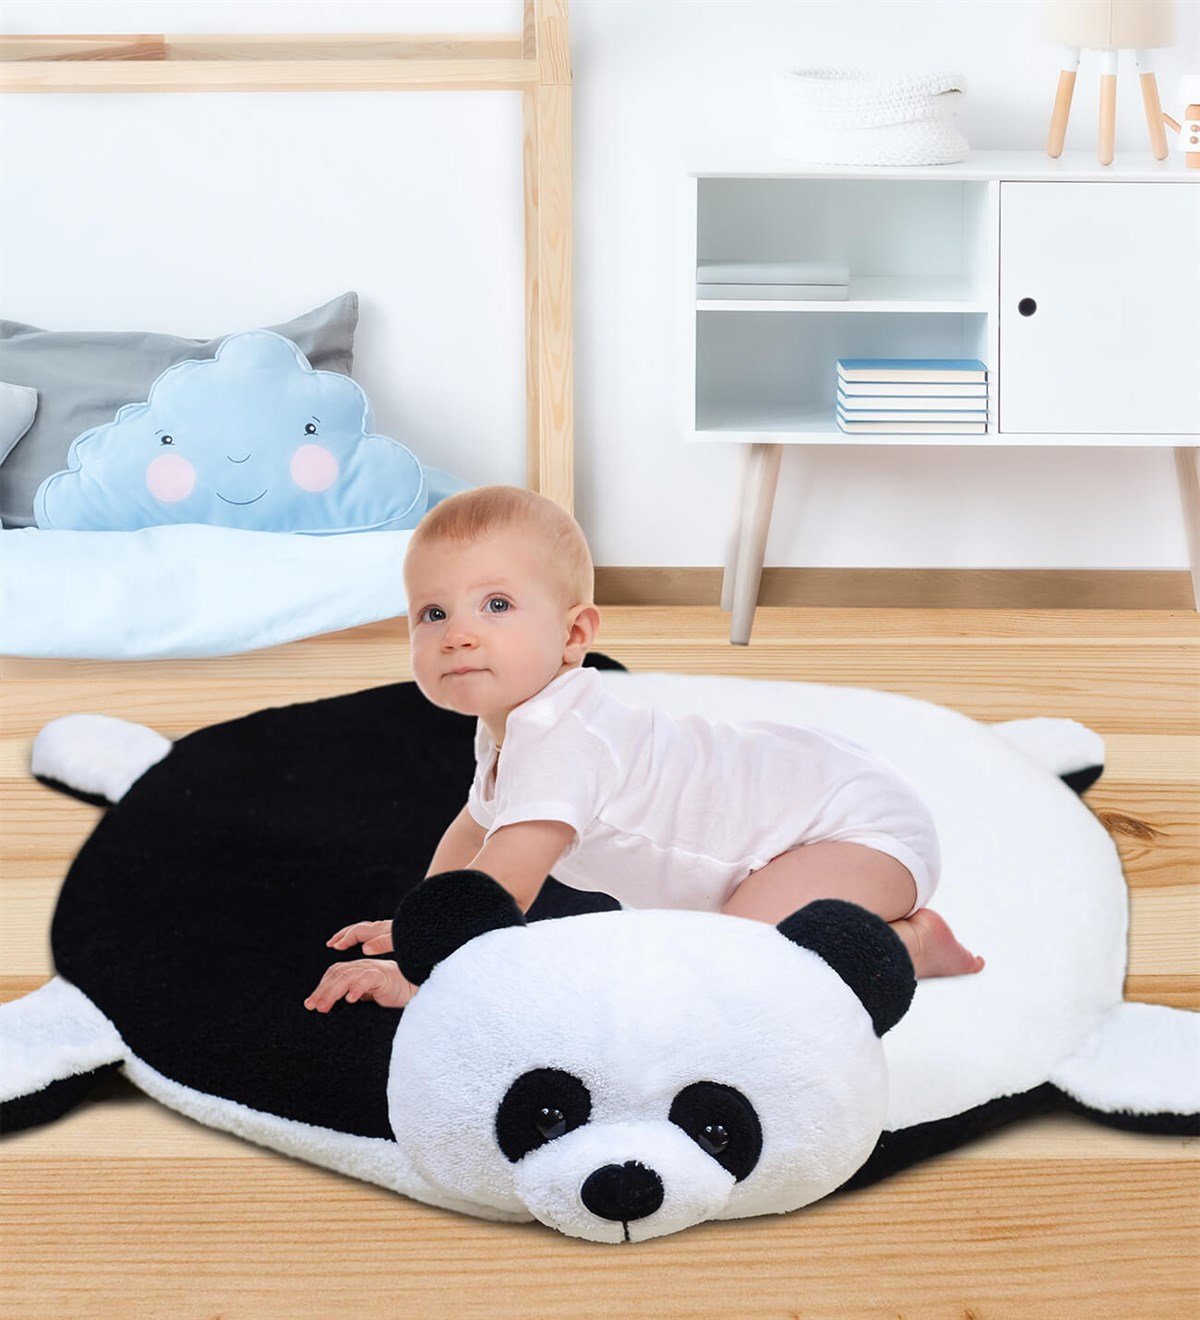 120 Cm Pandalı Bebek Oyun Halısı Fiyatları | Pababo.com